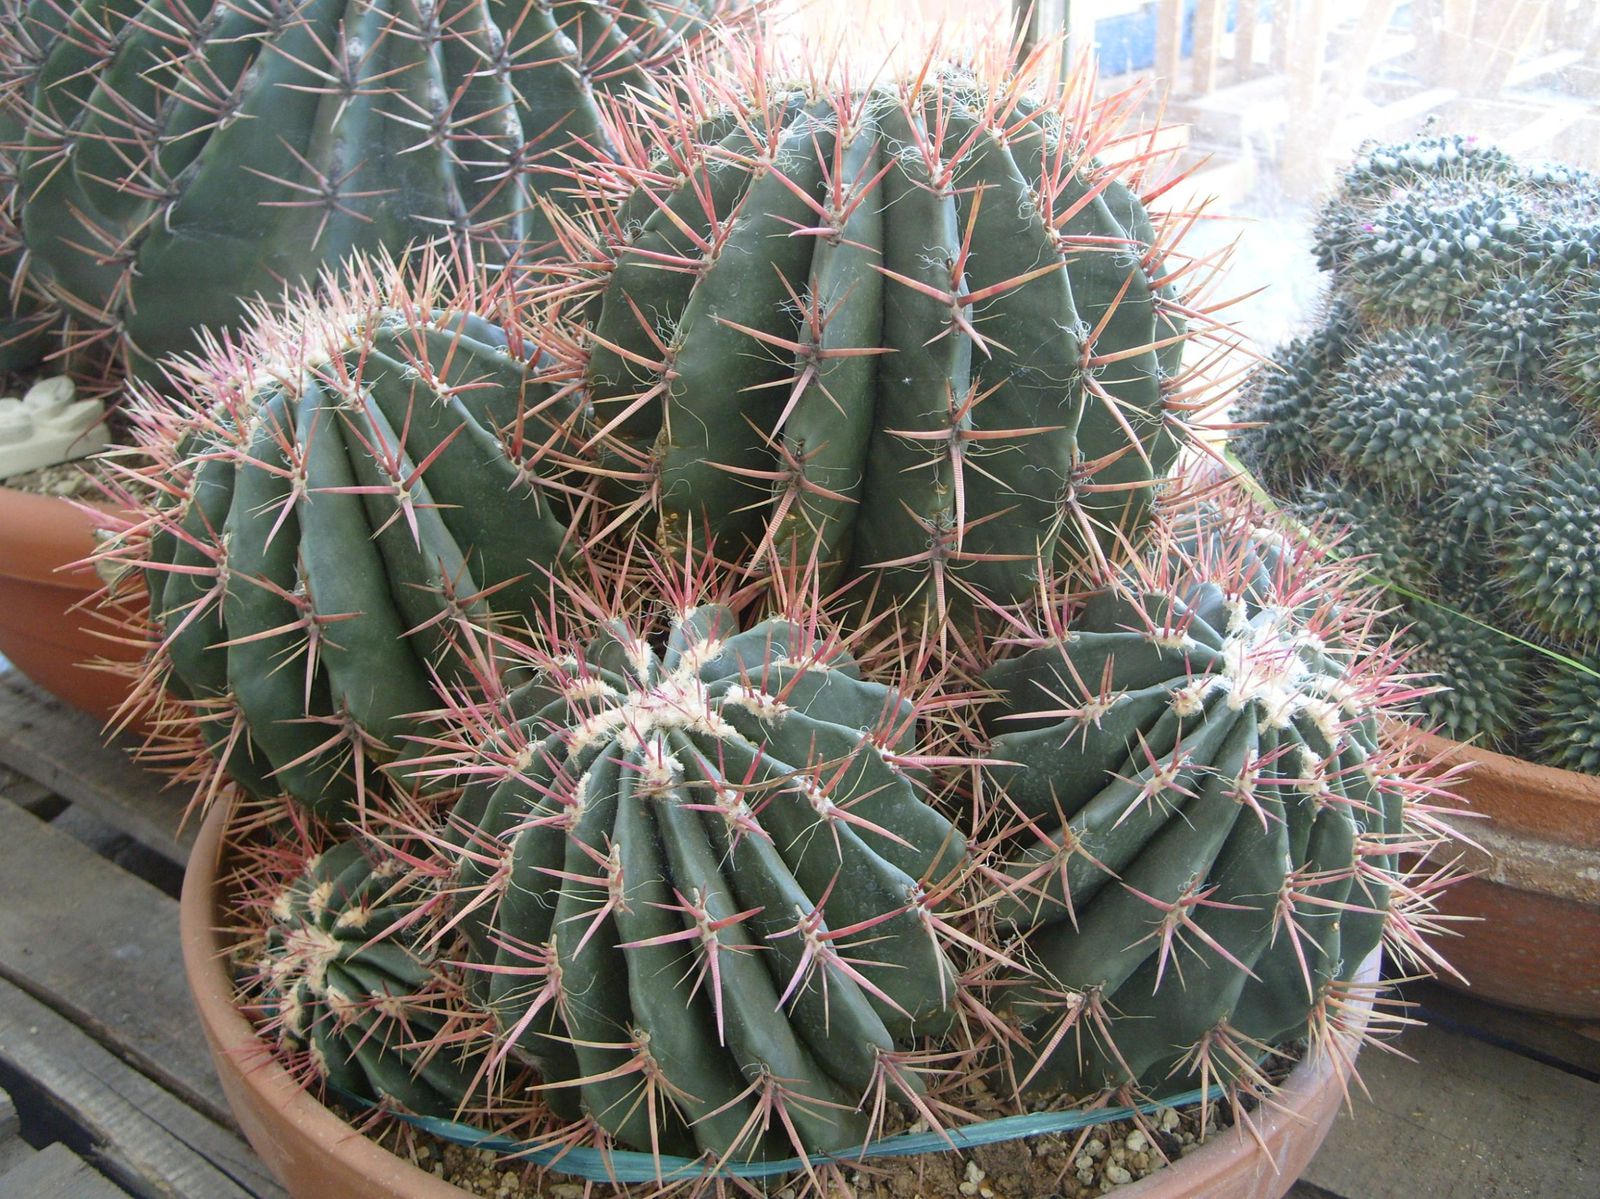 Photos de cactus prises dans des jardineries ou dans la nature